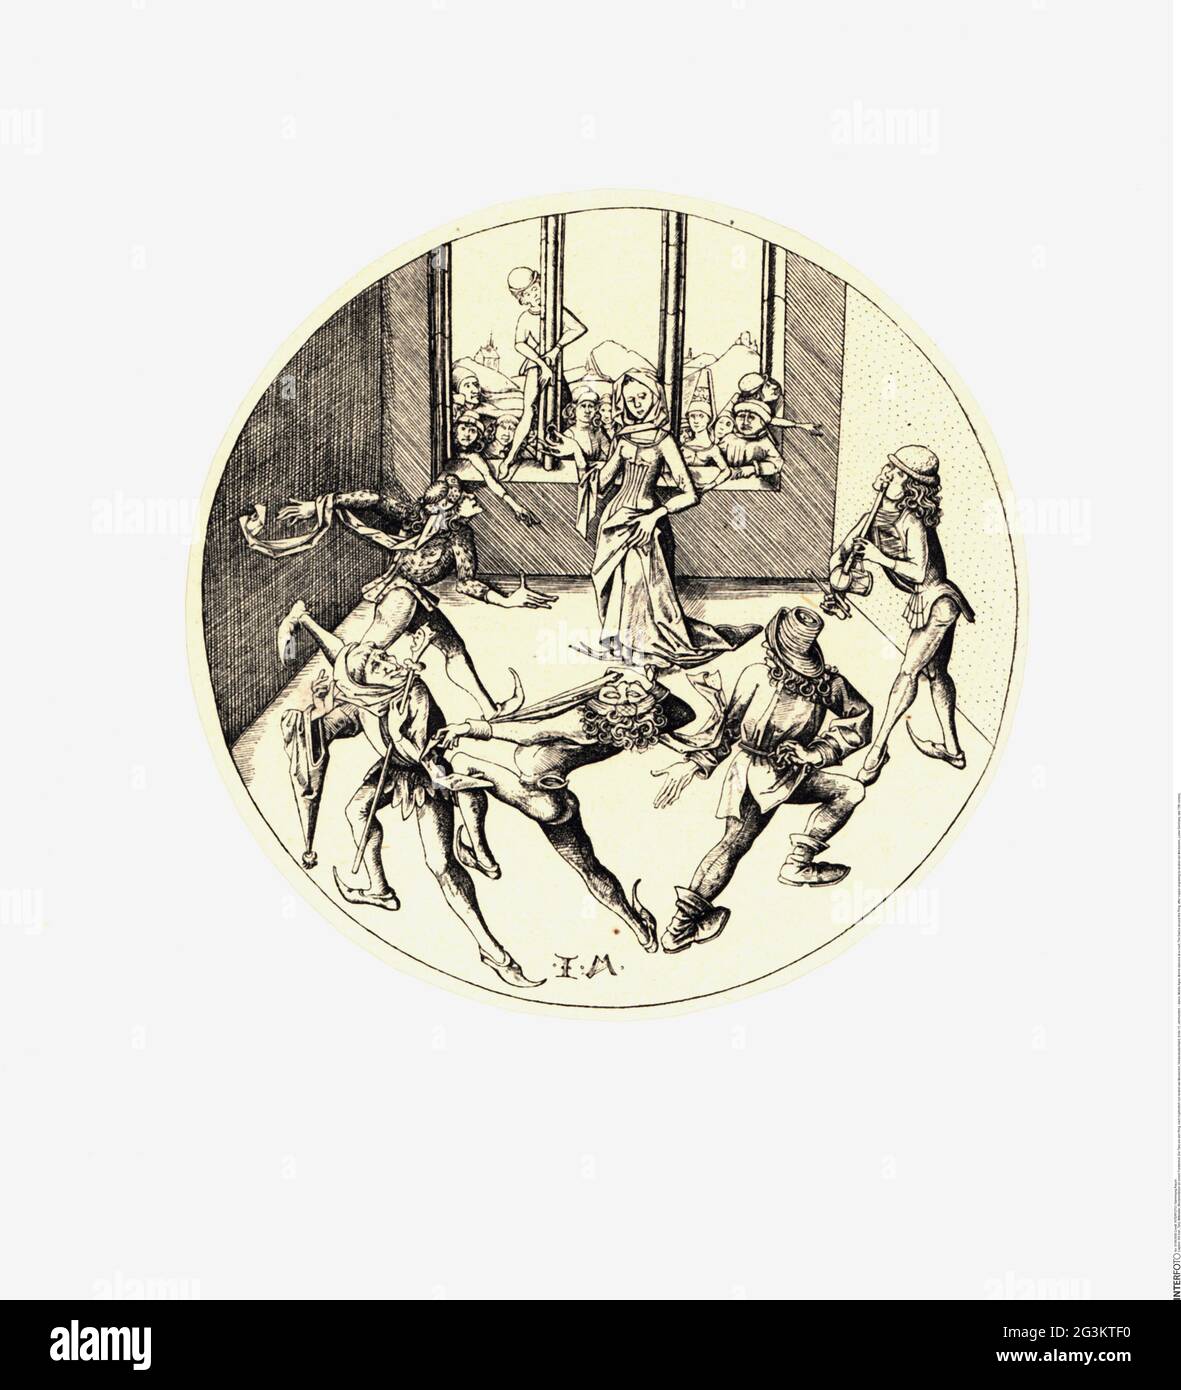 Danza, Medioevo, ballerini Morris a una corte, la danza intorno all'anello, IL COPYRIGHT DELL'ARTISTA NON DEVE ESSERE CHIARITO Foto Stock